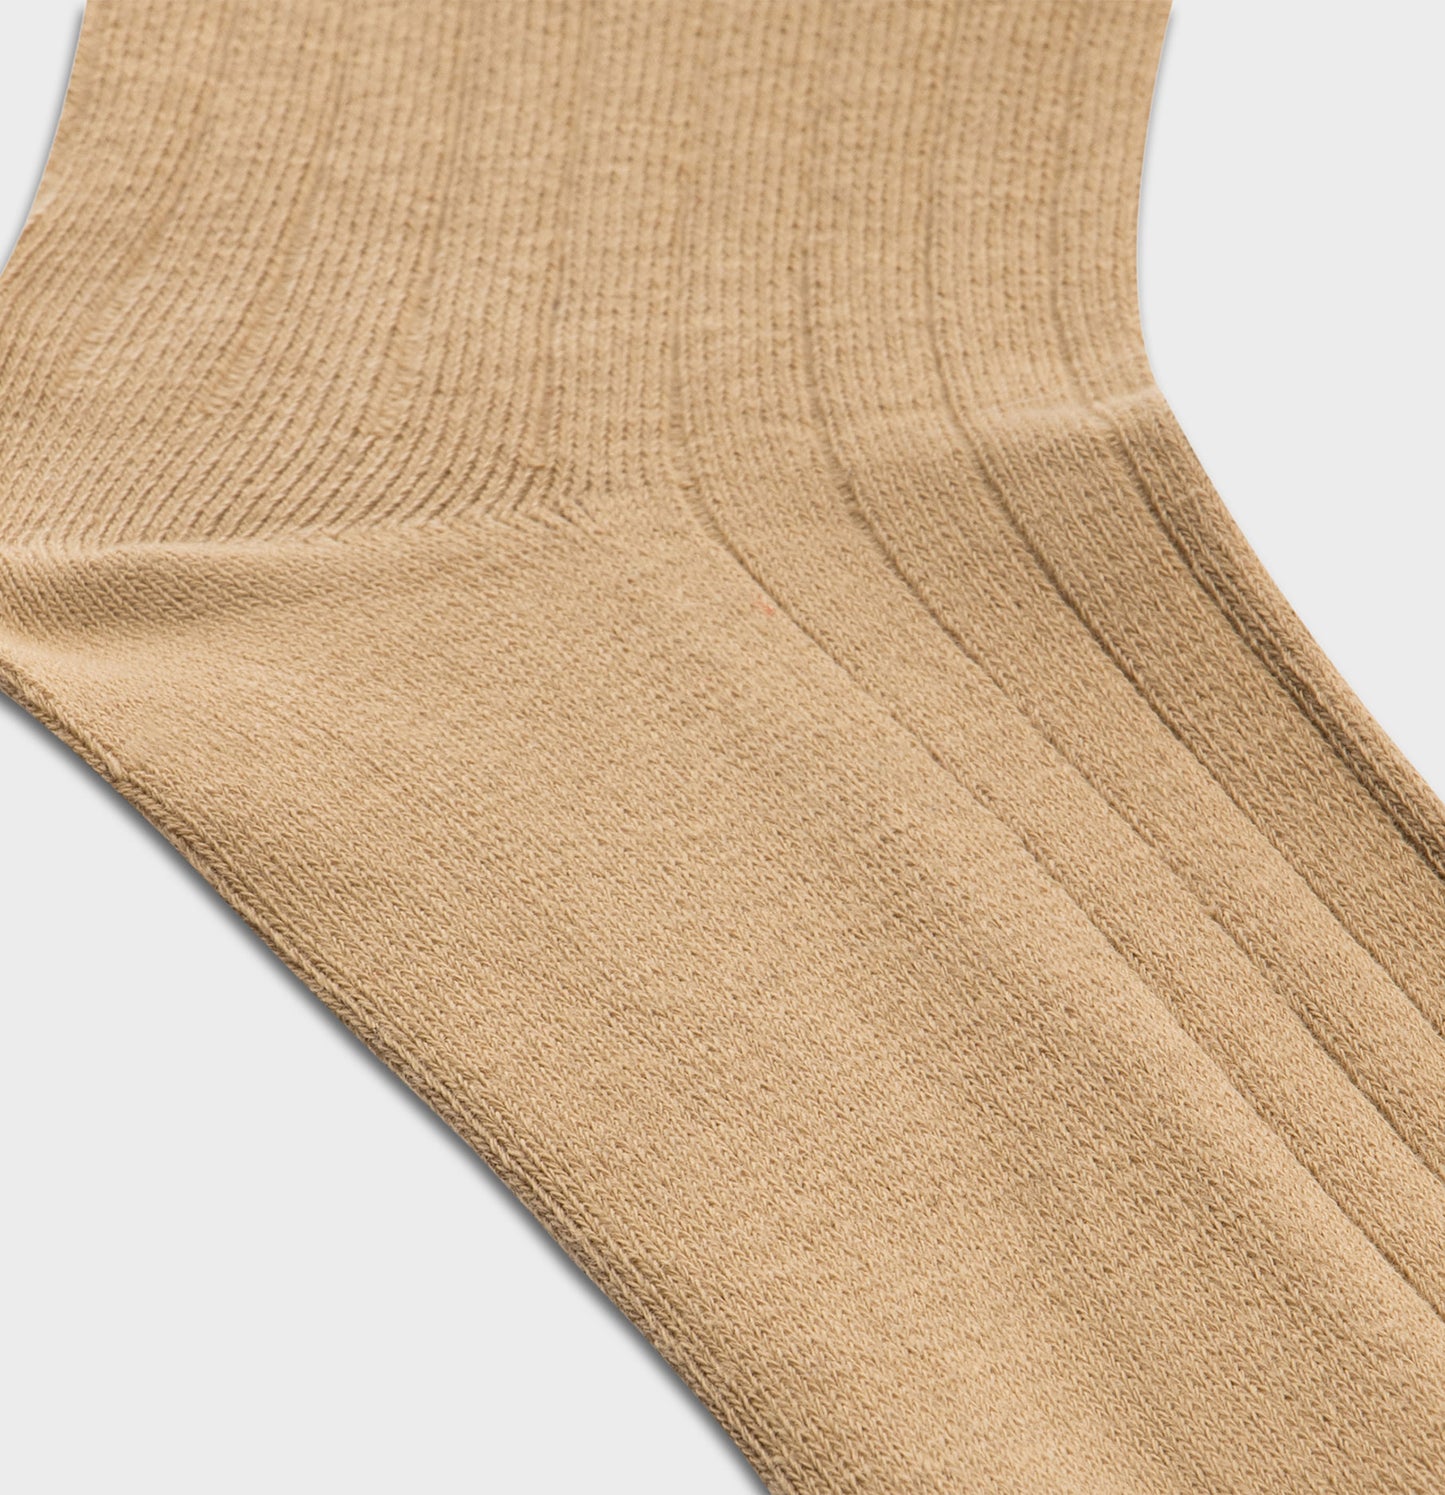 Solid Tan Dress Sock